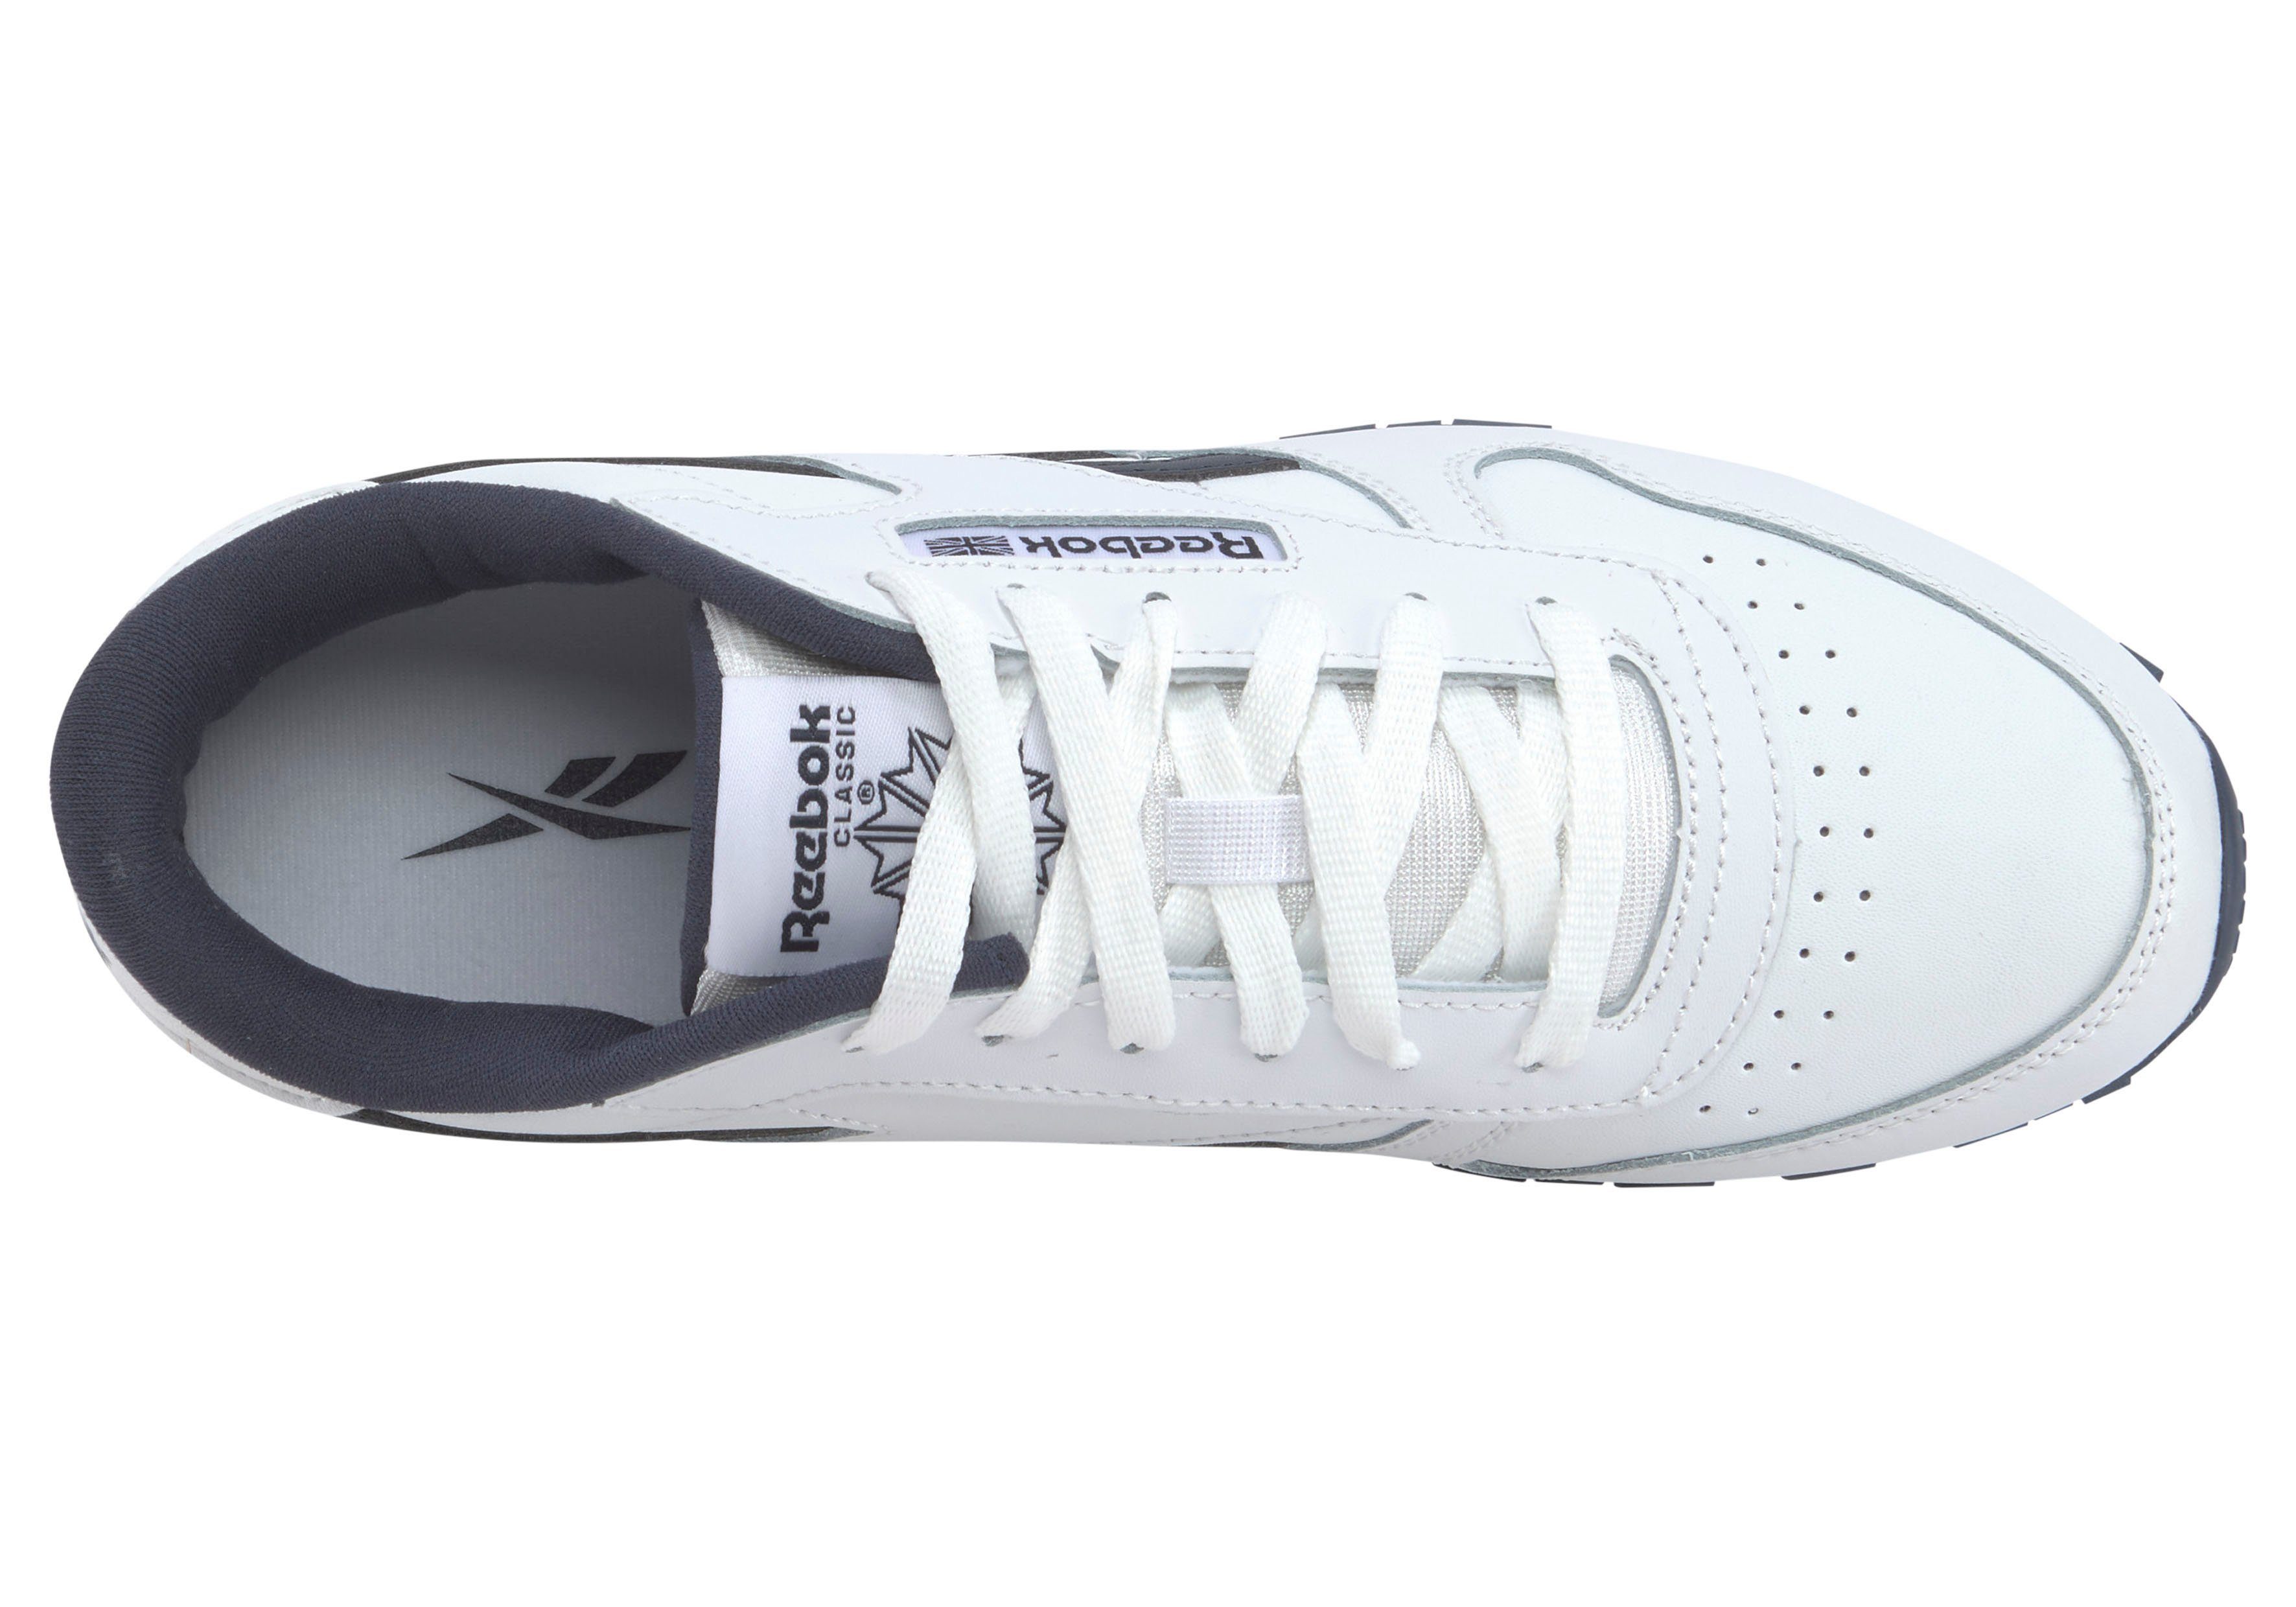 weiß-schwarz Sneaker LEATHER Reebok Classic CLASSIC